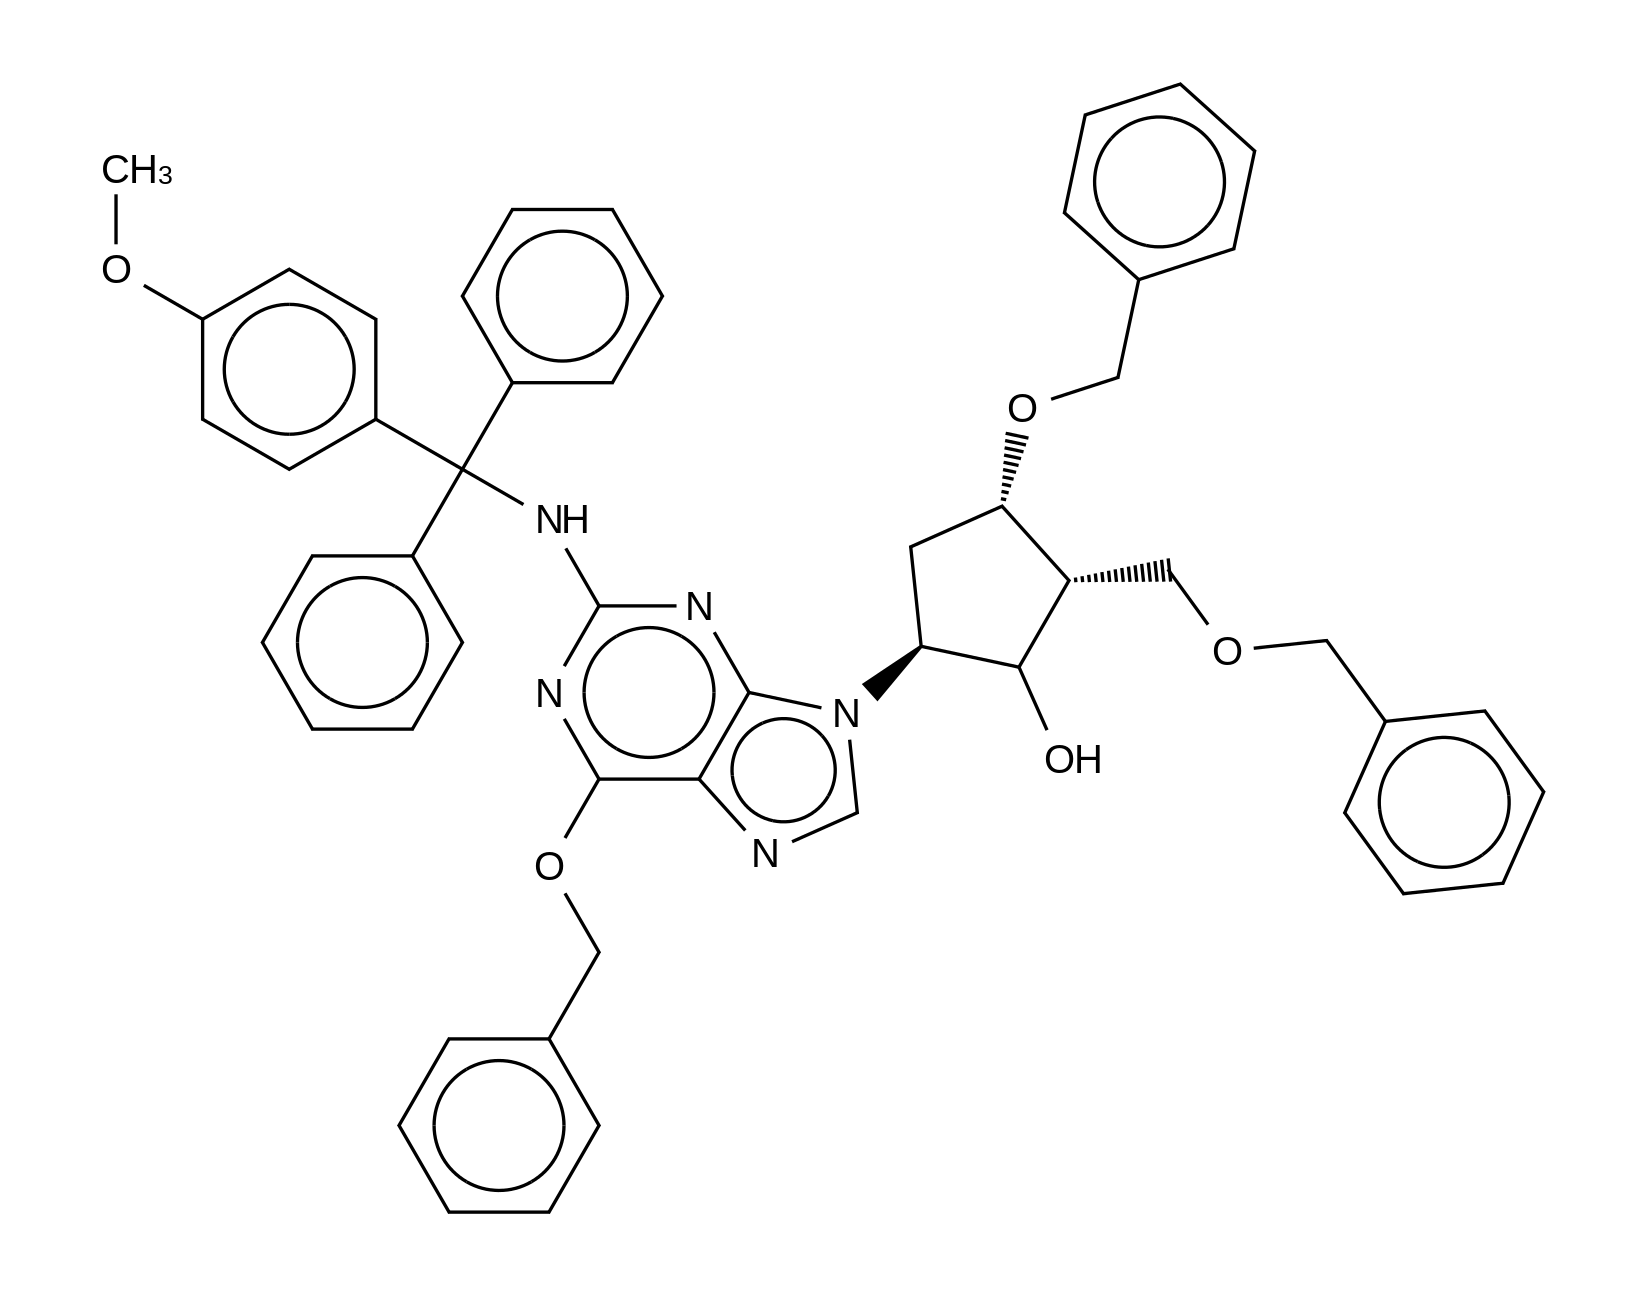 (2R,3S,5S)-3-(Benzyloxy)-5-(6-(benzyloxy)-2-(((4-methoxyphenyl)diphenylmethyl)amino)-9H-purin-9-yl)-2-((benzyloxy)methyl)cyclopentanol